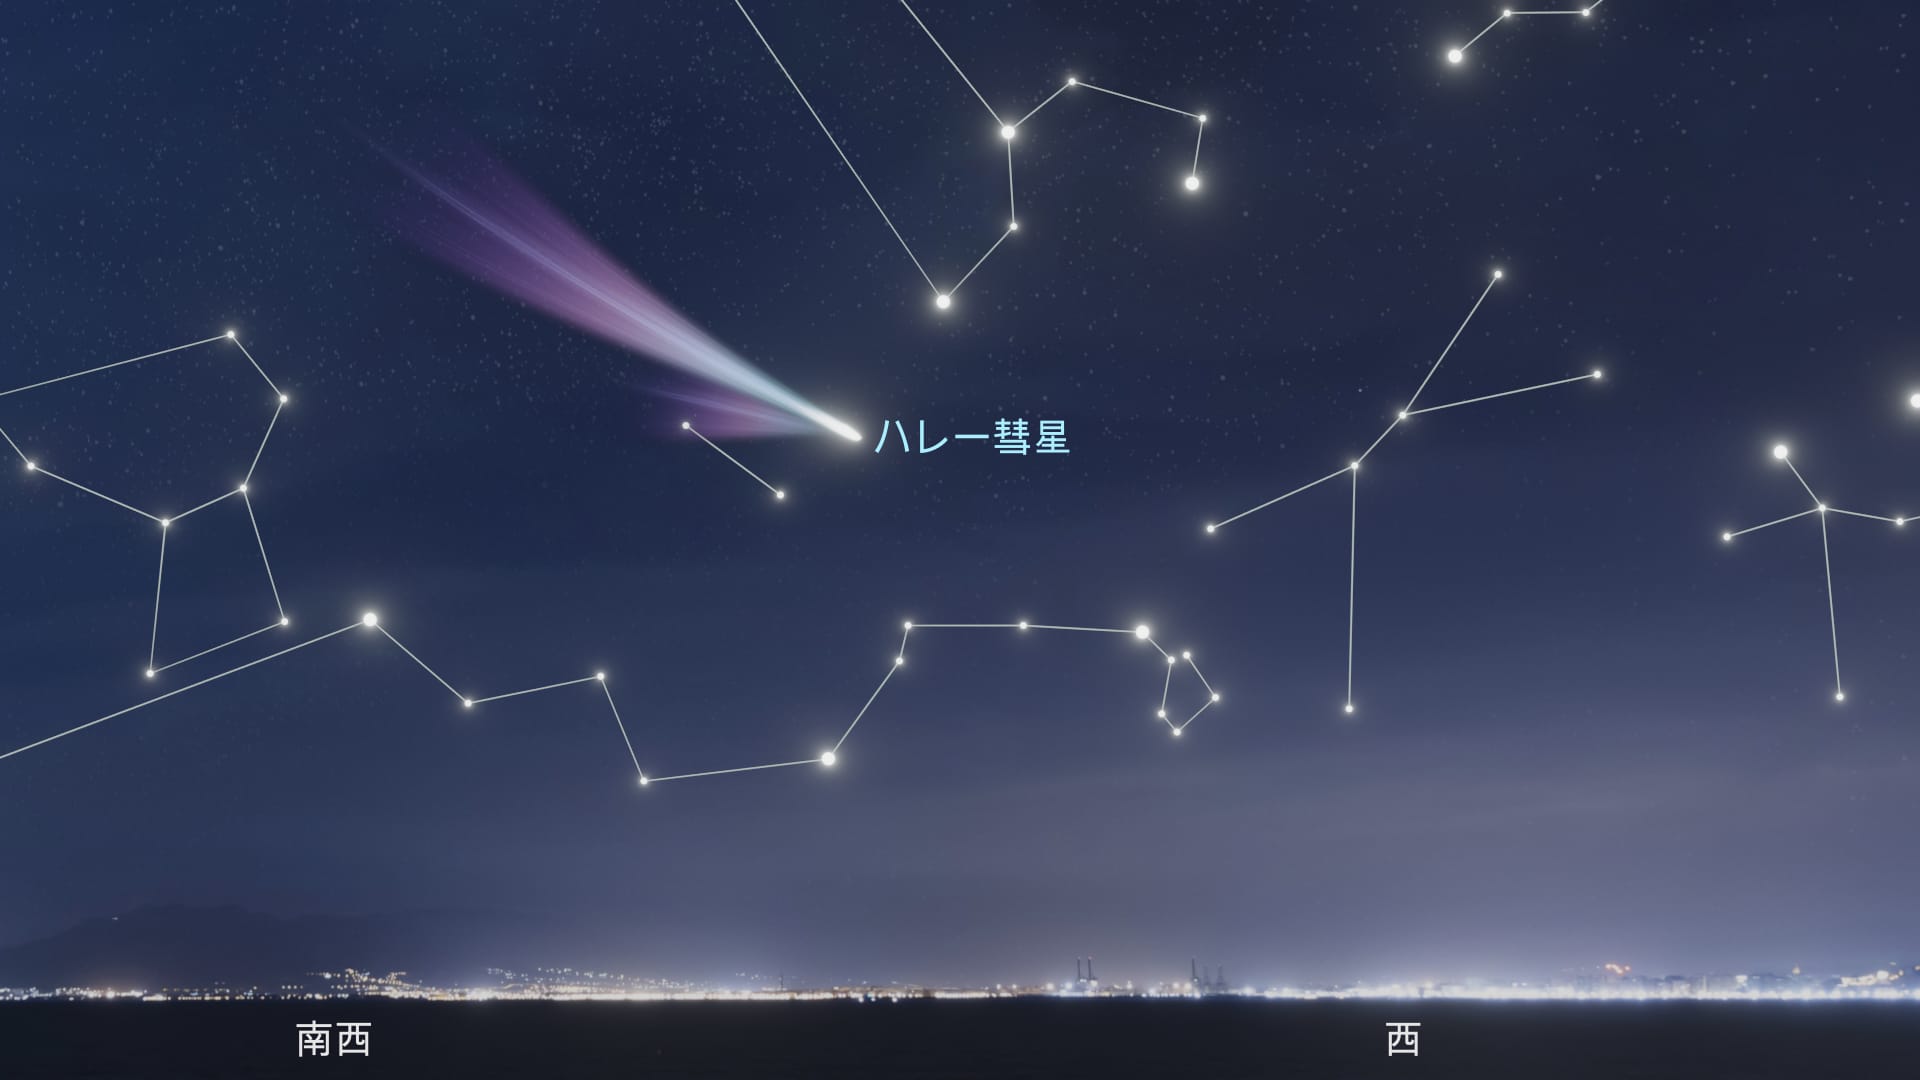 Comet Halley in the sky